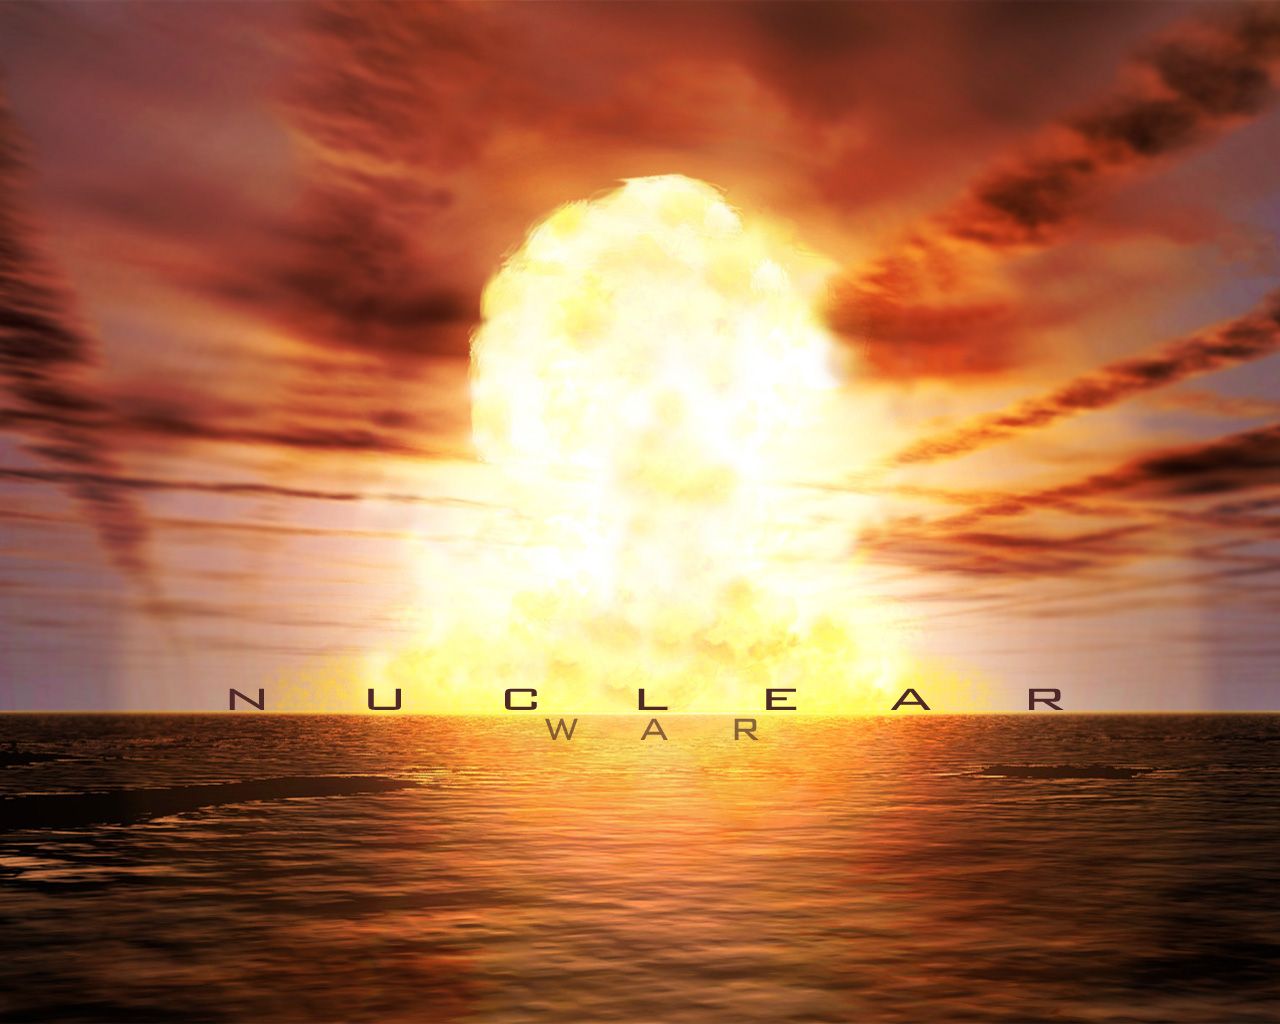 Nuclear War wallpaper. Nuclear War